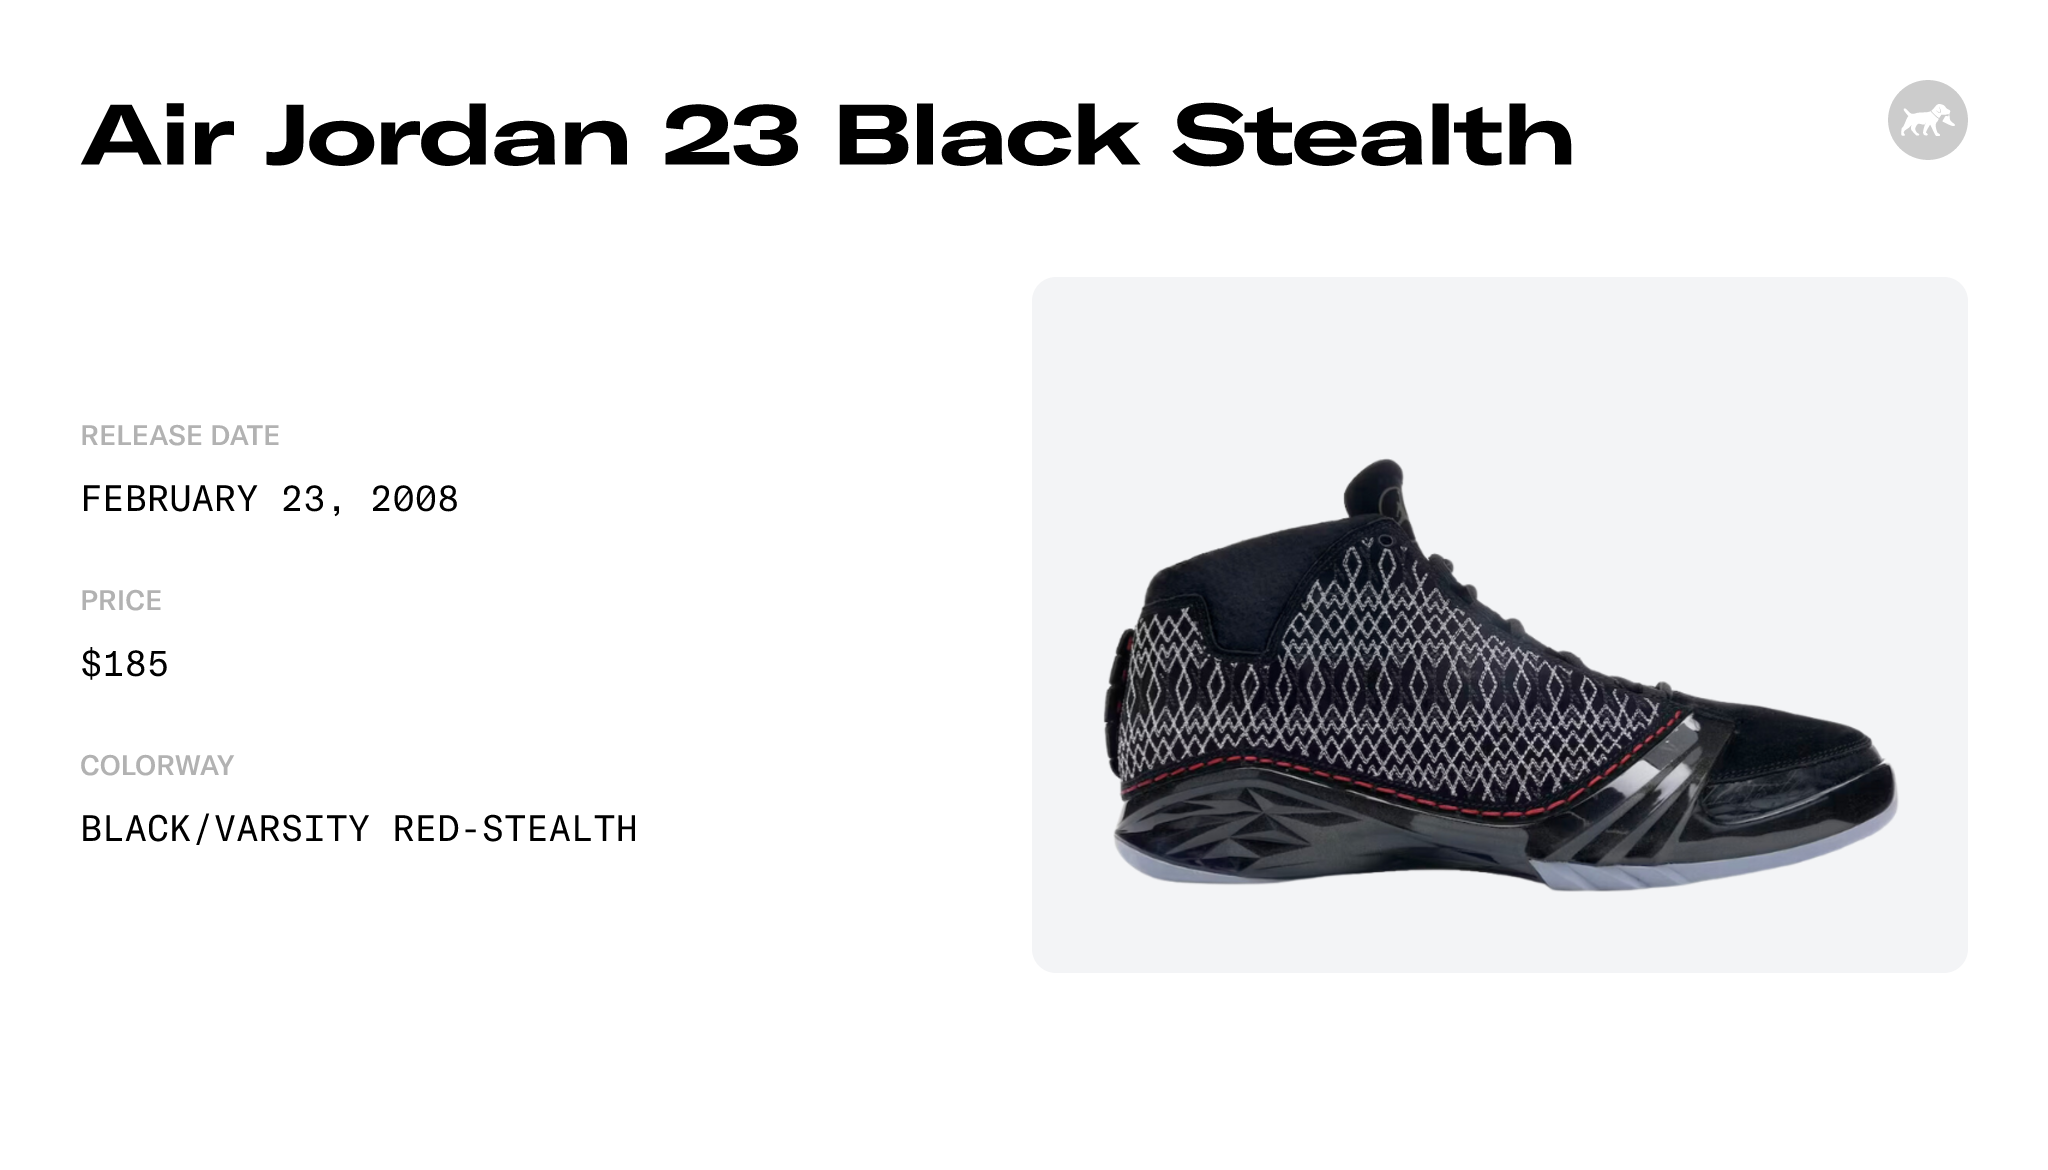 Air Jordan 23 Black Stealth - 318376-001 Raffles and Release Date